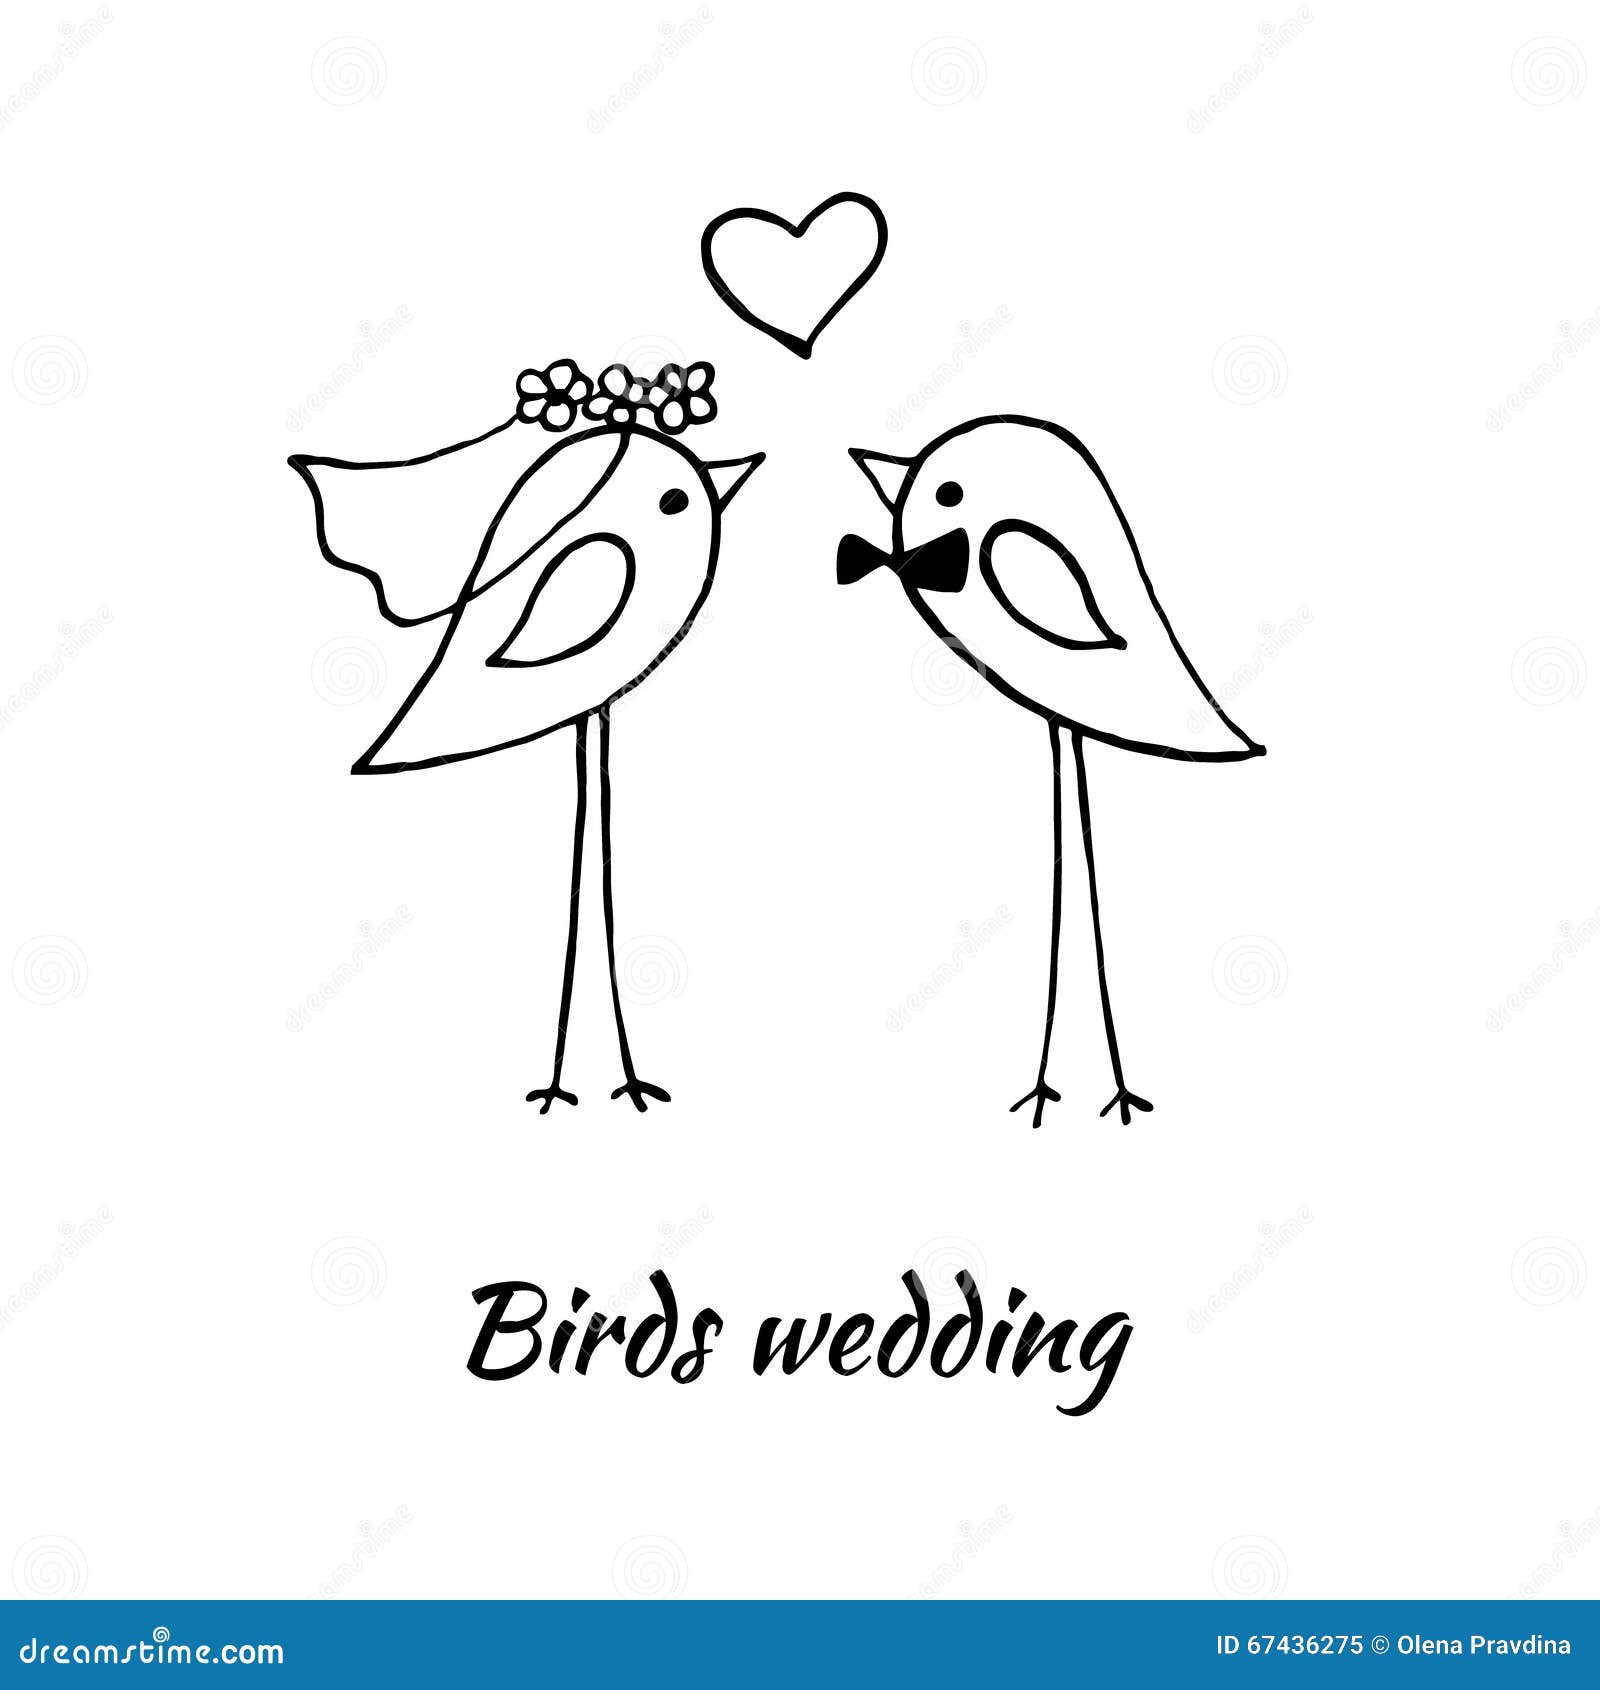 Две птички для годовщины свадьбы